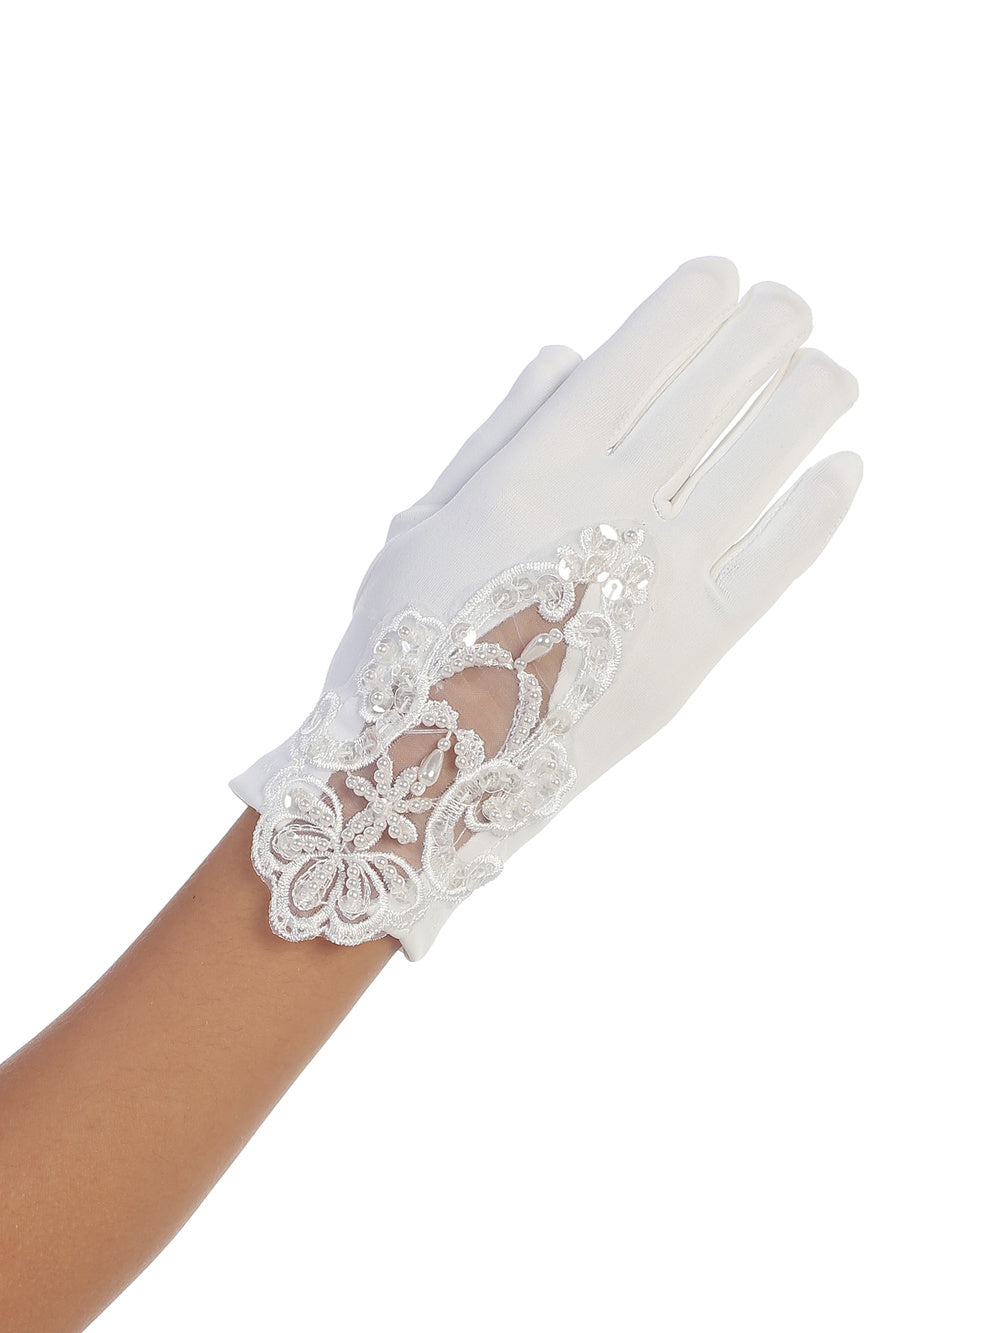 Matte Satin Gloves w/ Lace Embellished Top